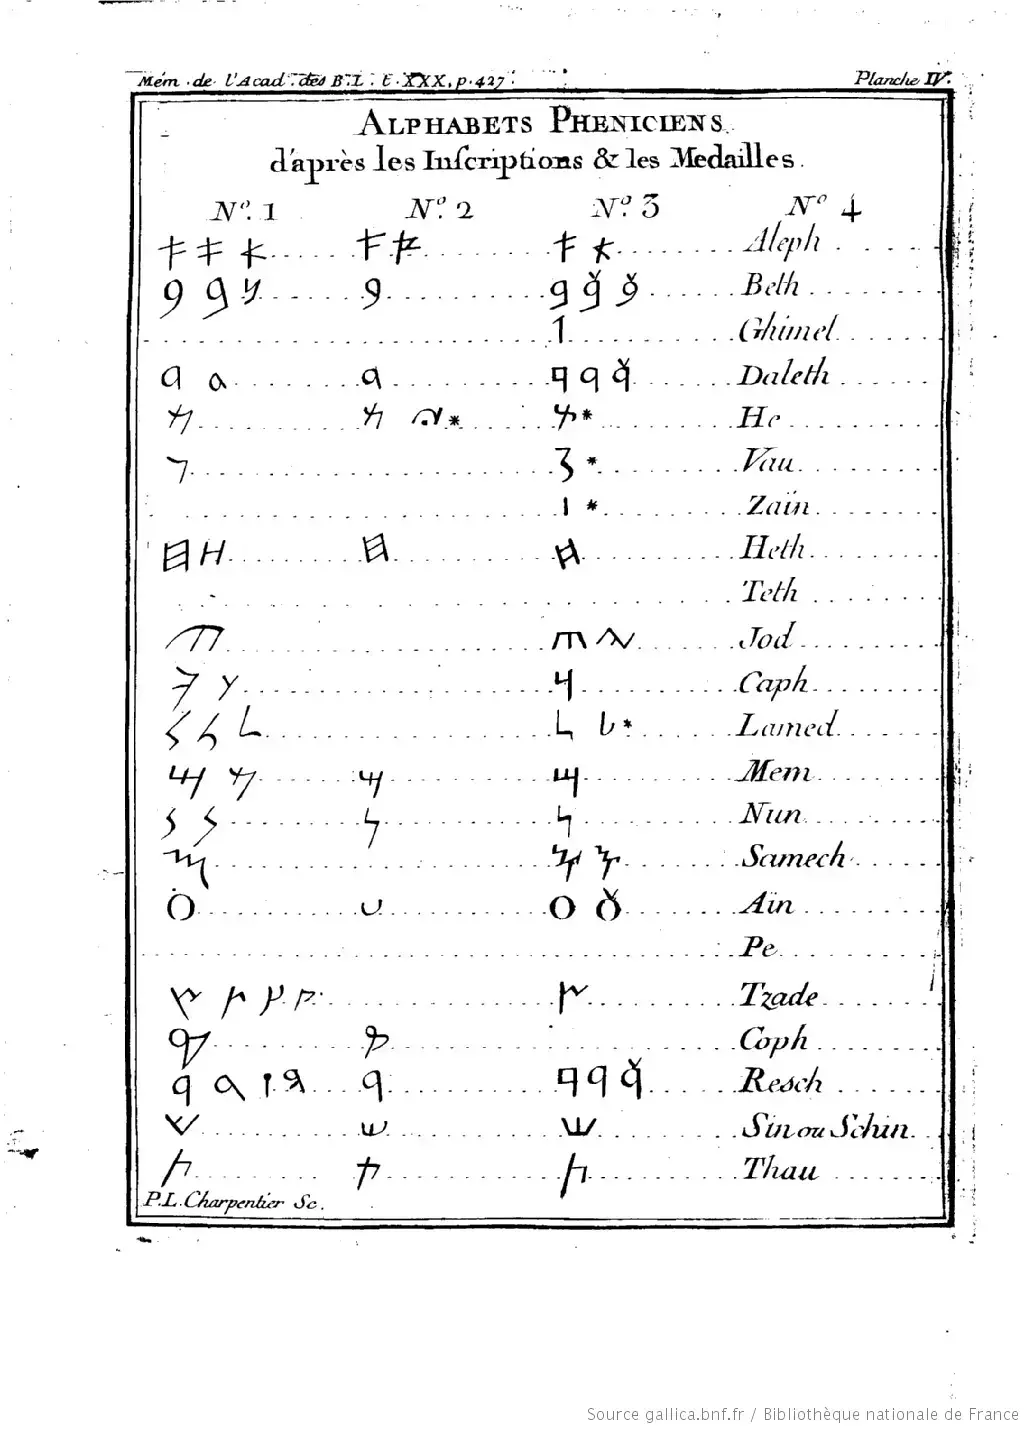 Historia del alfabeto: Del alfabeto fenicio surgieron el antiguo alfabeto hebreo, el alfabeto arameo y el alfabeto griego.